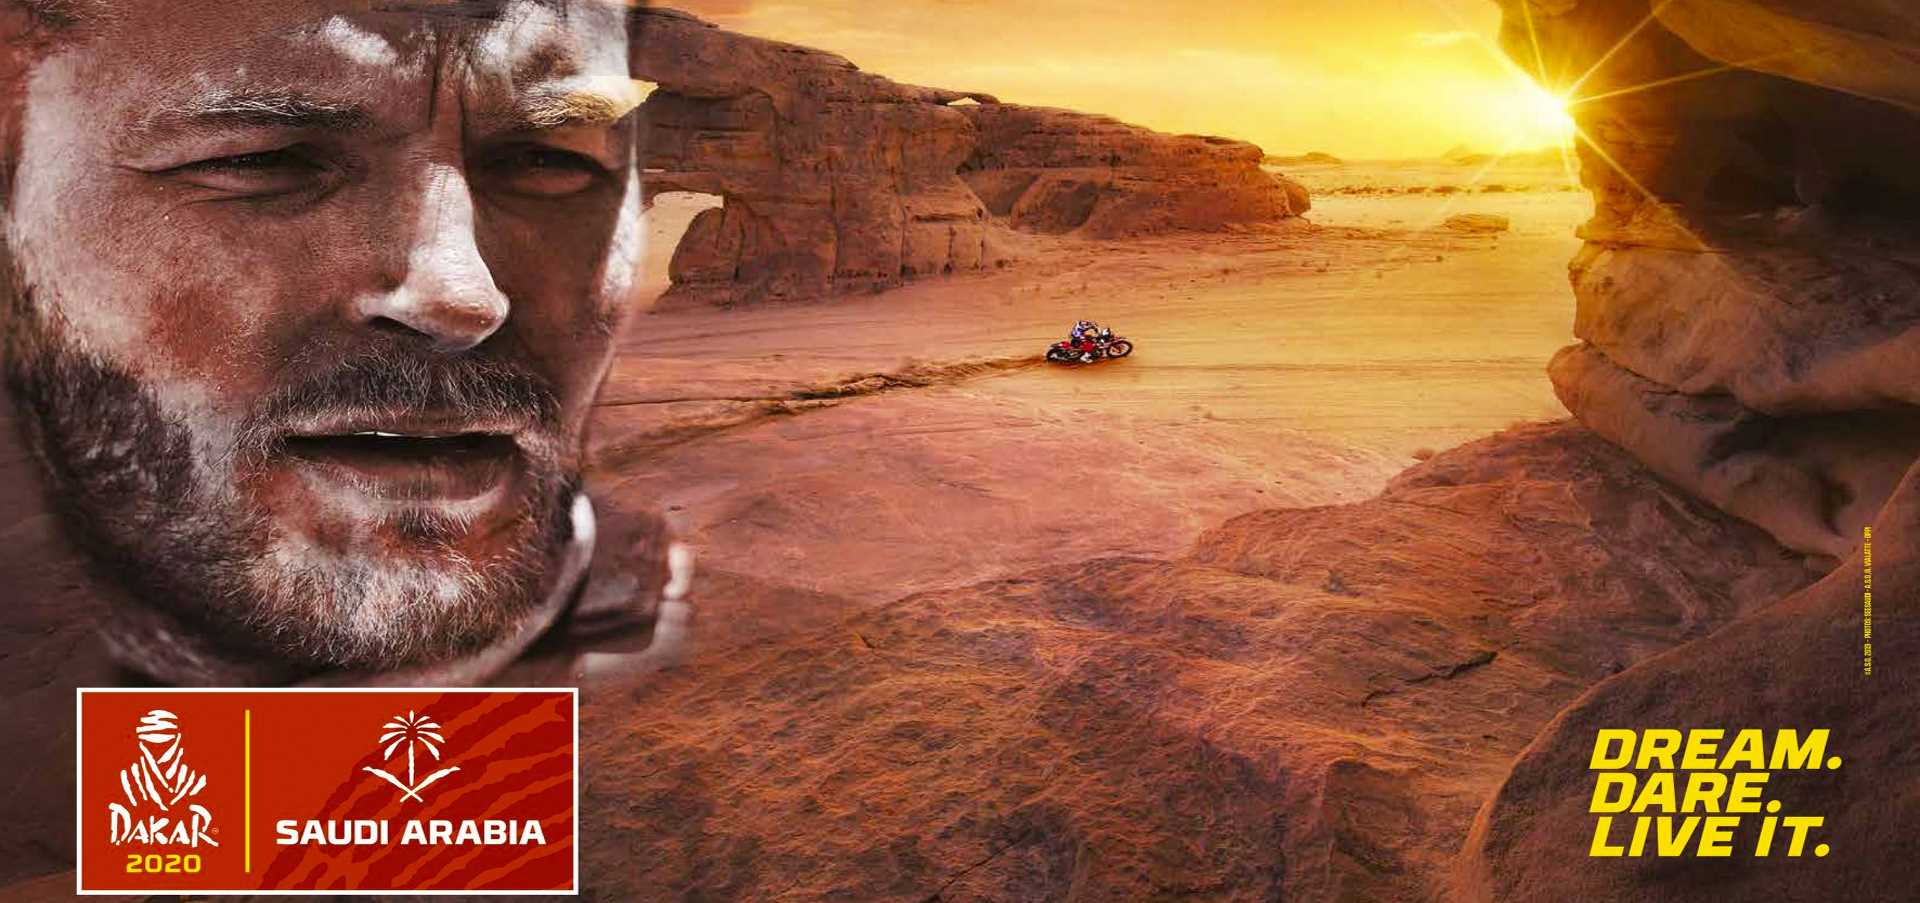 3e60sport organizza l'evento di lancio del Dakar rally in Arabia Saudita